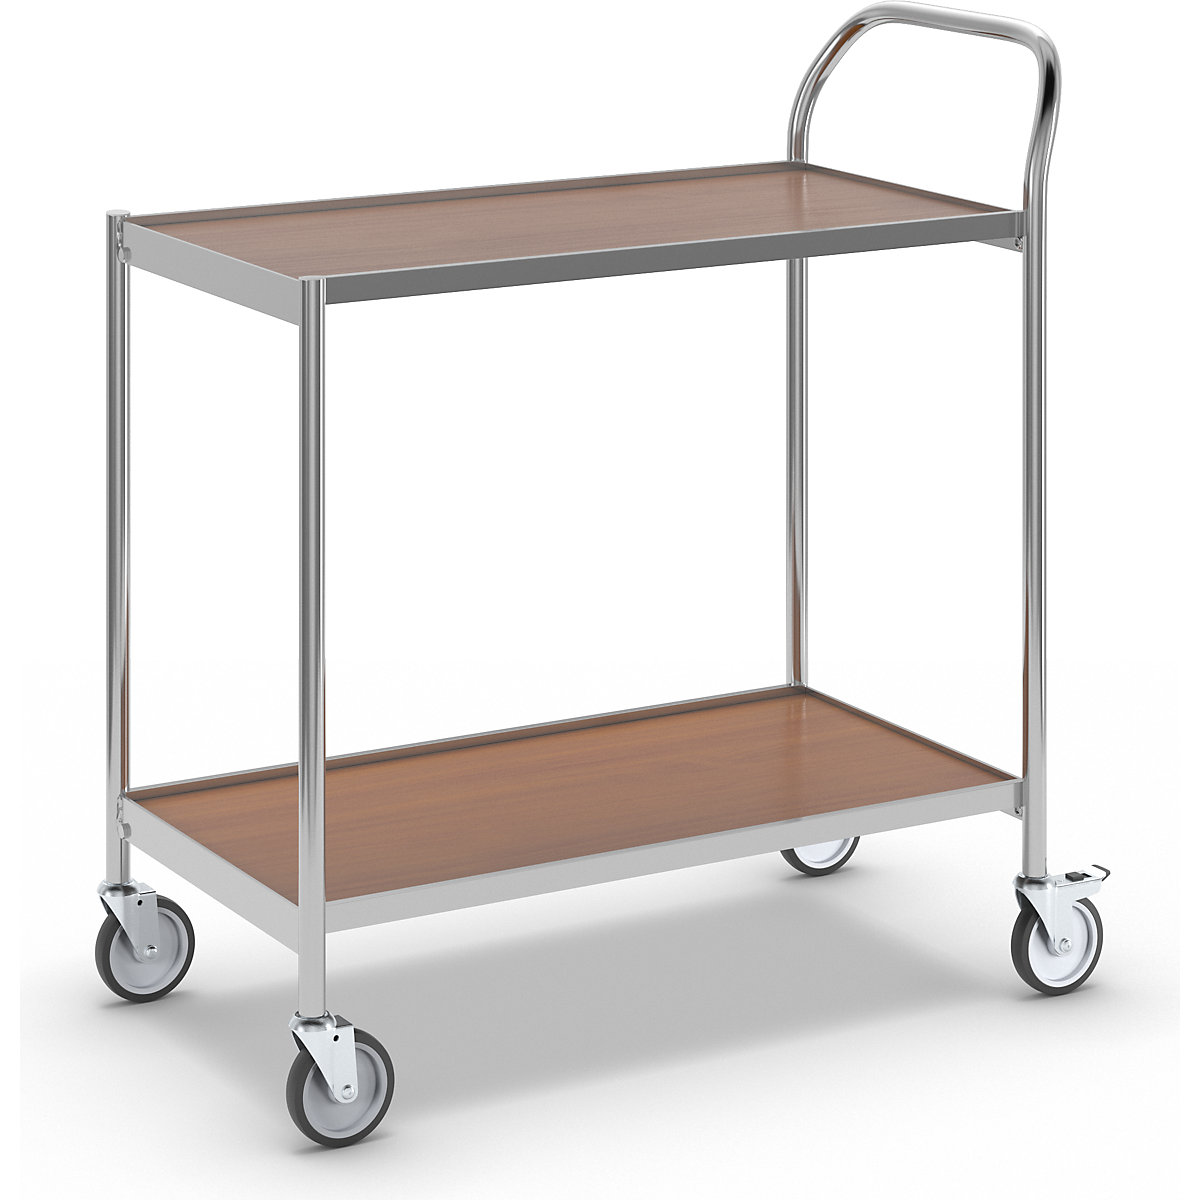 Stolový vozík – HelgeNyberg, 2 etáže, d x š 800 x 420 mm, chrom / buk-11